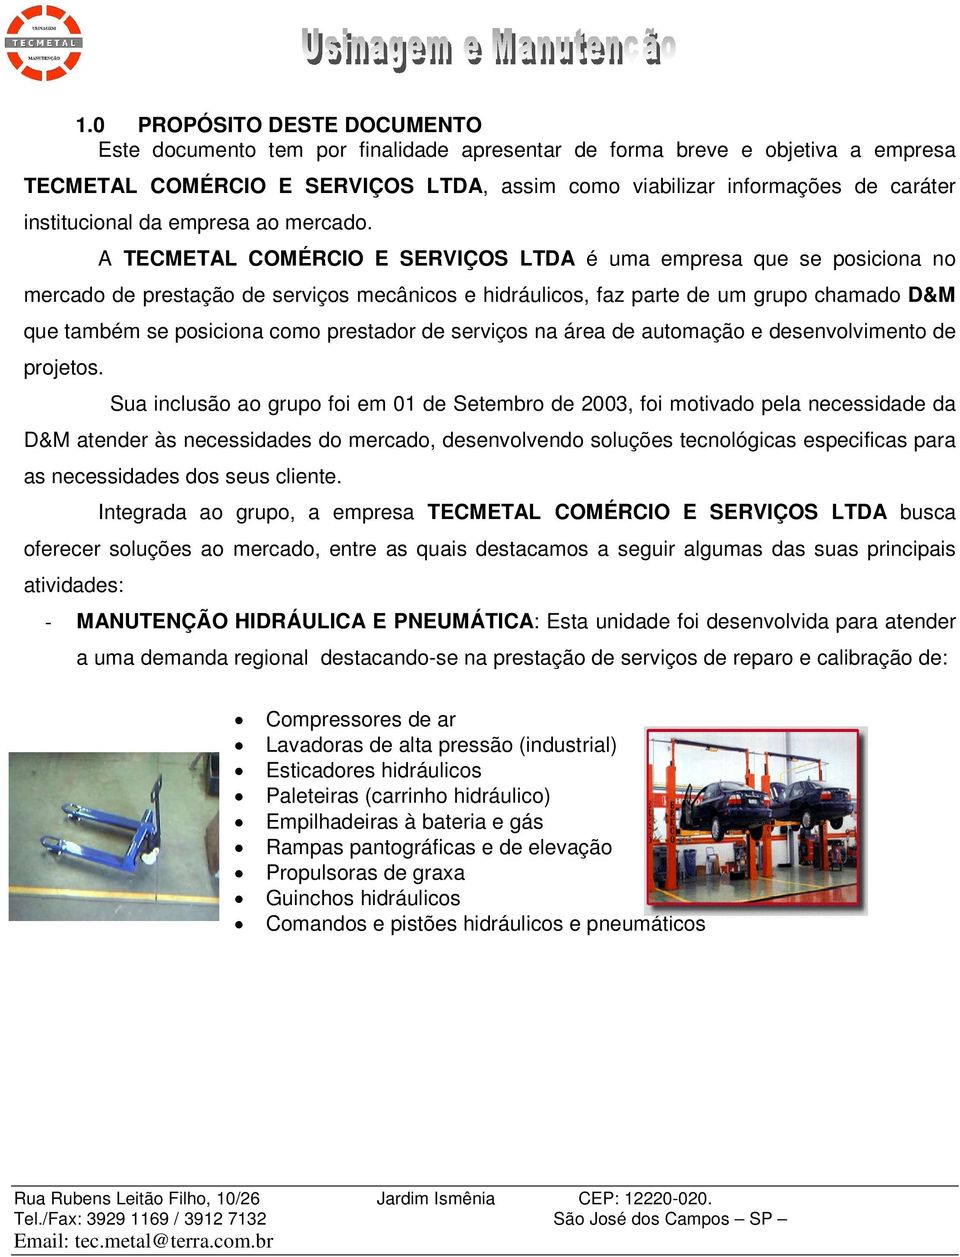 A TECMETAL COMÉRCIO E SERVIÇOS LTDA é uma empresa que se posiciona no mercado de prestação de serviços mecânicos e hidráulicos, faz parte de um grupo chamado D&M que também se posiciona como